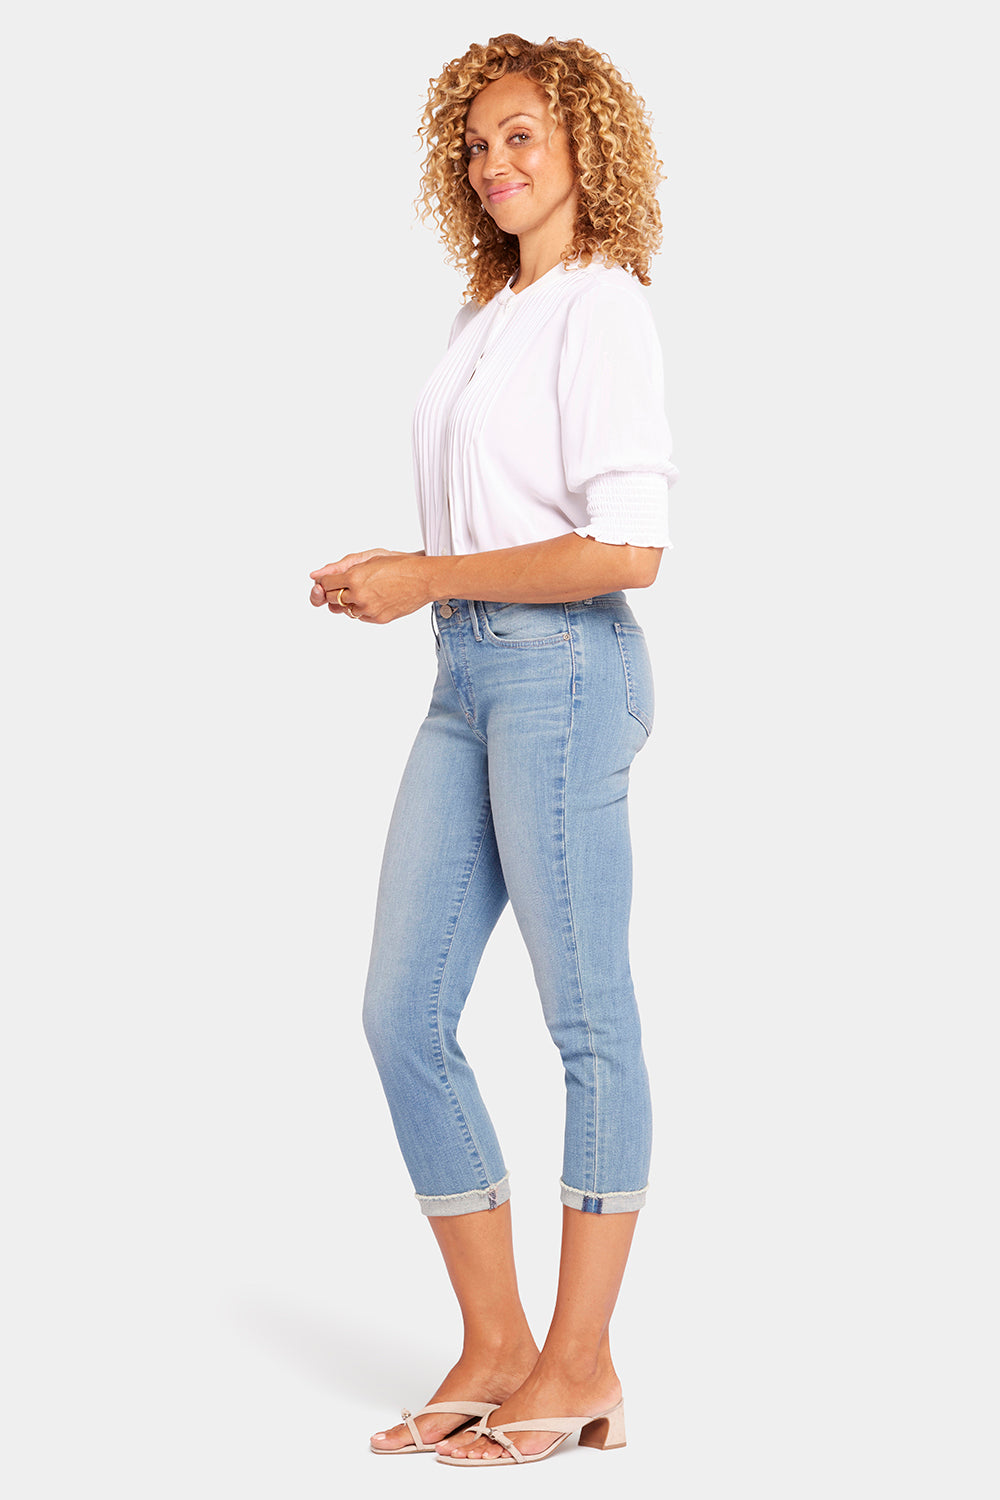 NYDJ Chloe Capri Jeans In Petite With Cuffs - Mesmerize